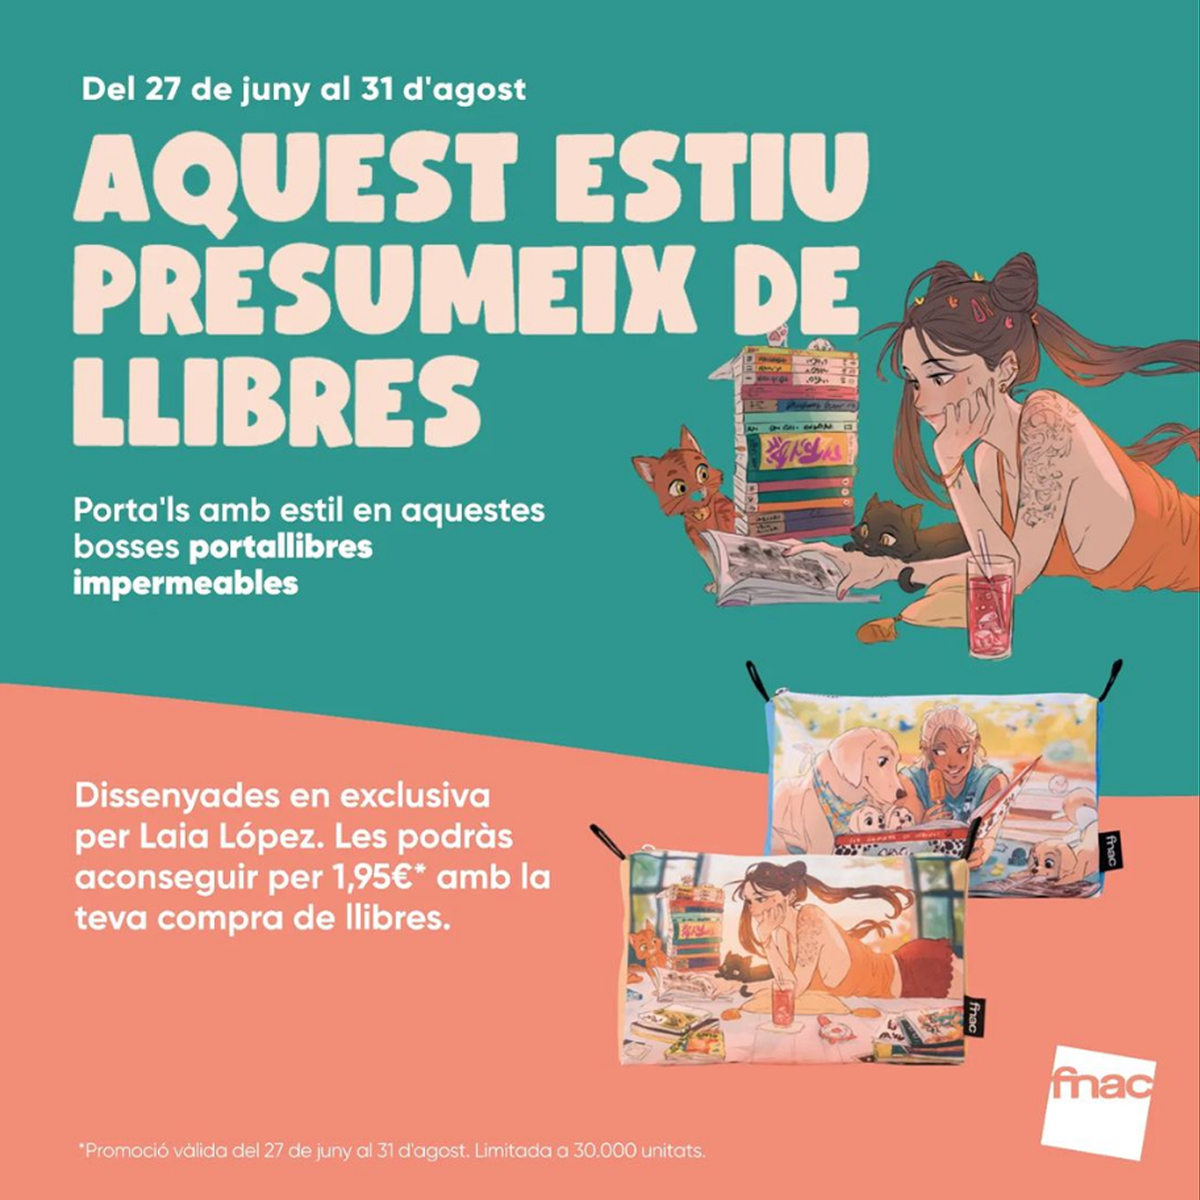 Unarmed condom emergency FNAC WATERPROOF BOOK HOLDER – Espai Gironès